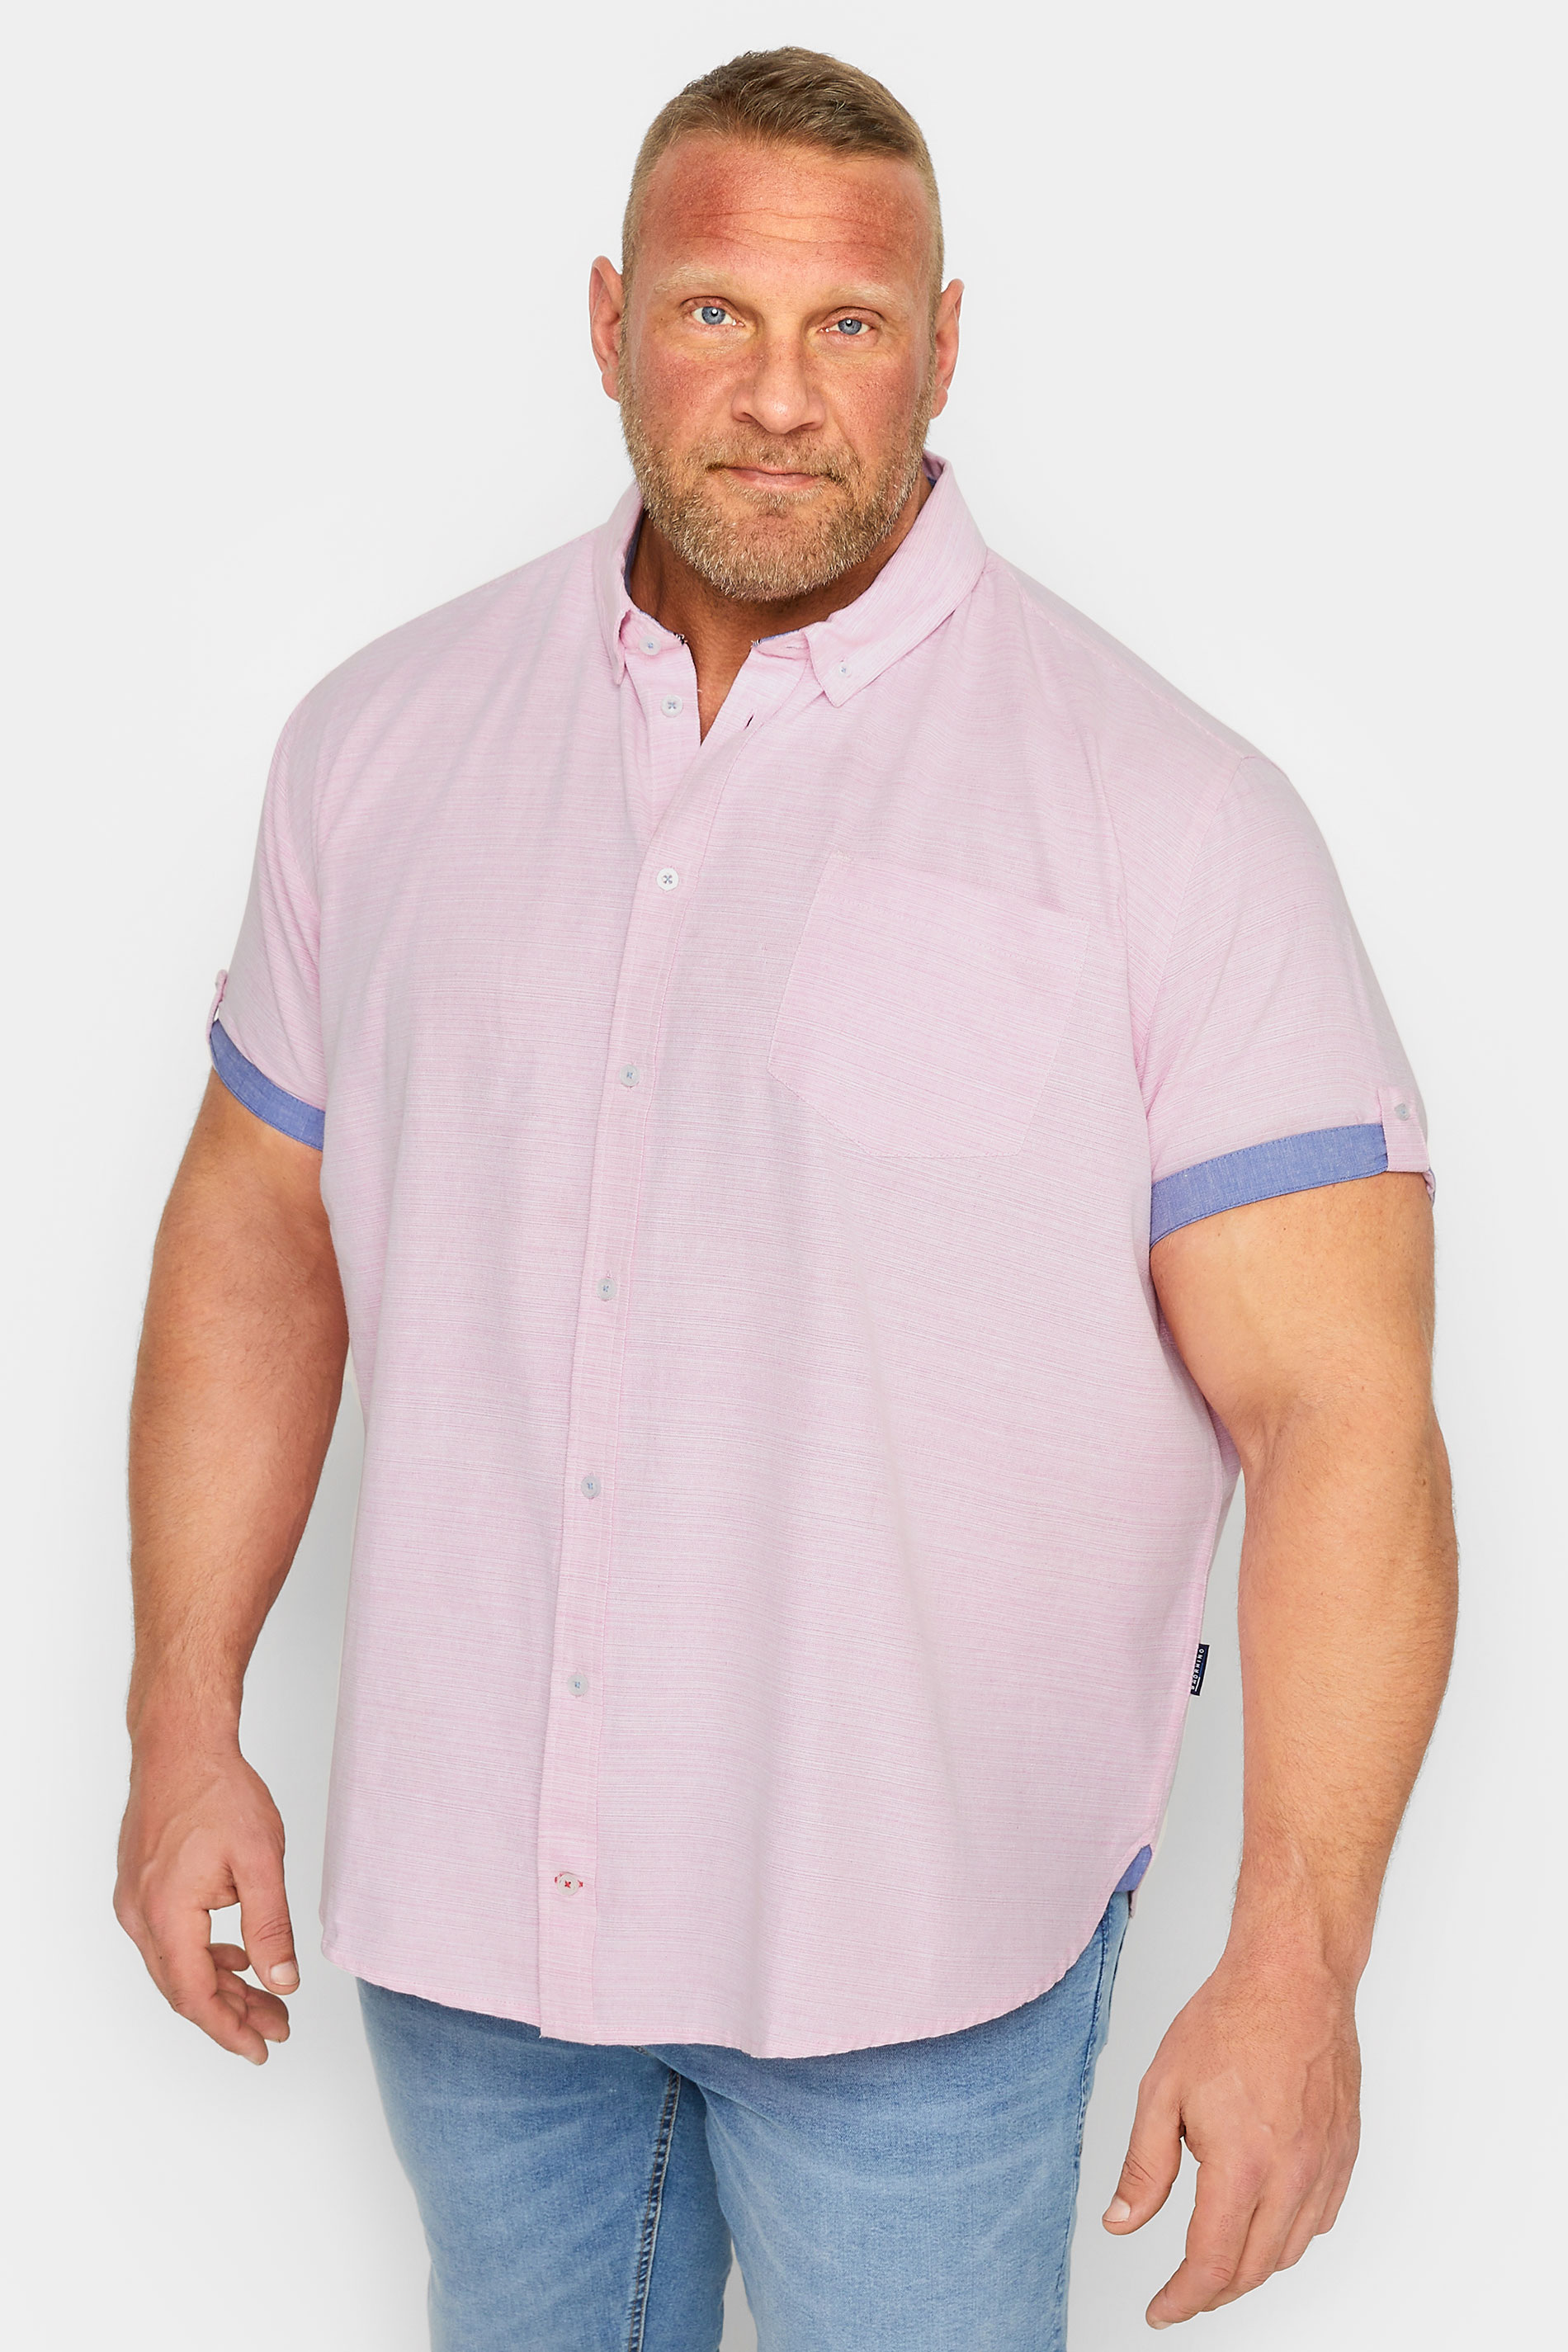 BadRhino Big & Tall Pink Cotton Slub Shirt | BadRhino 1